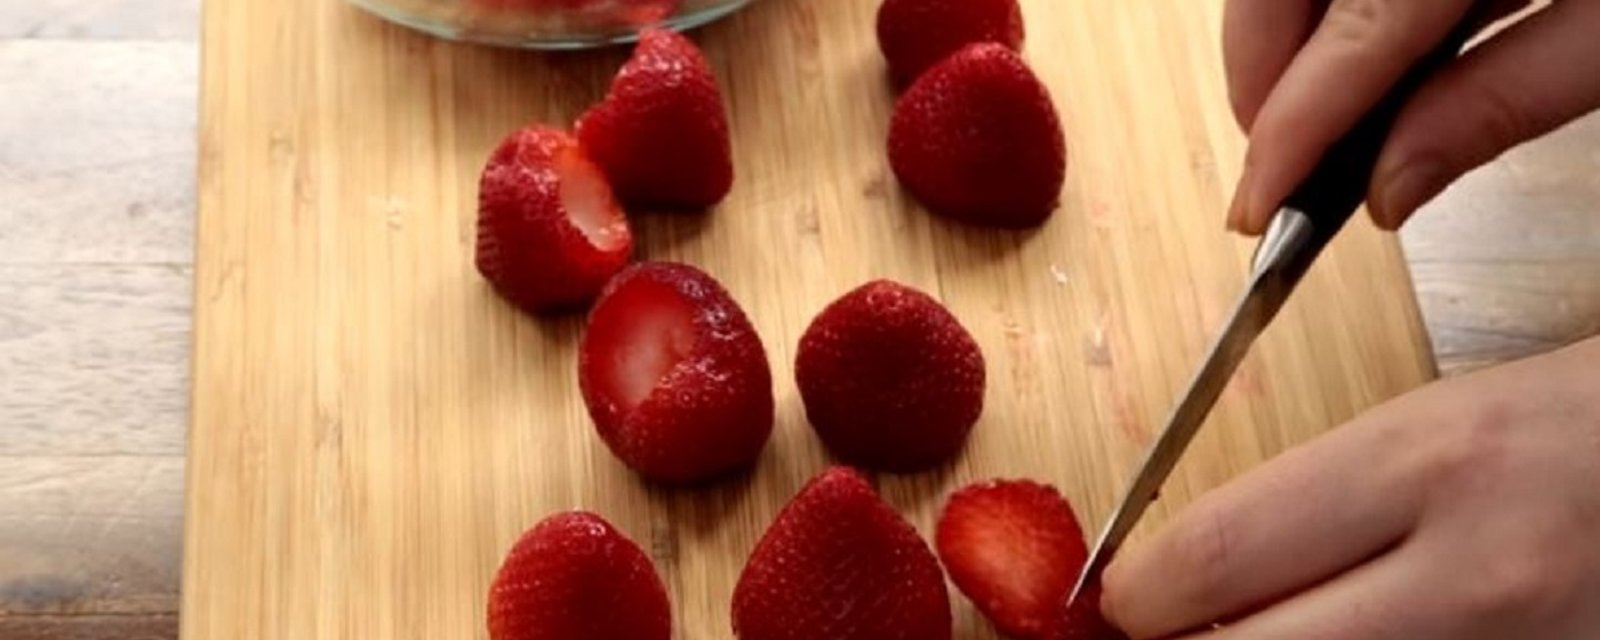 Cette recette vous permettra d'apprêter vos fraises d'une toute nouvelle façon